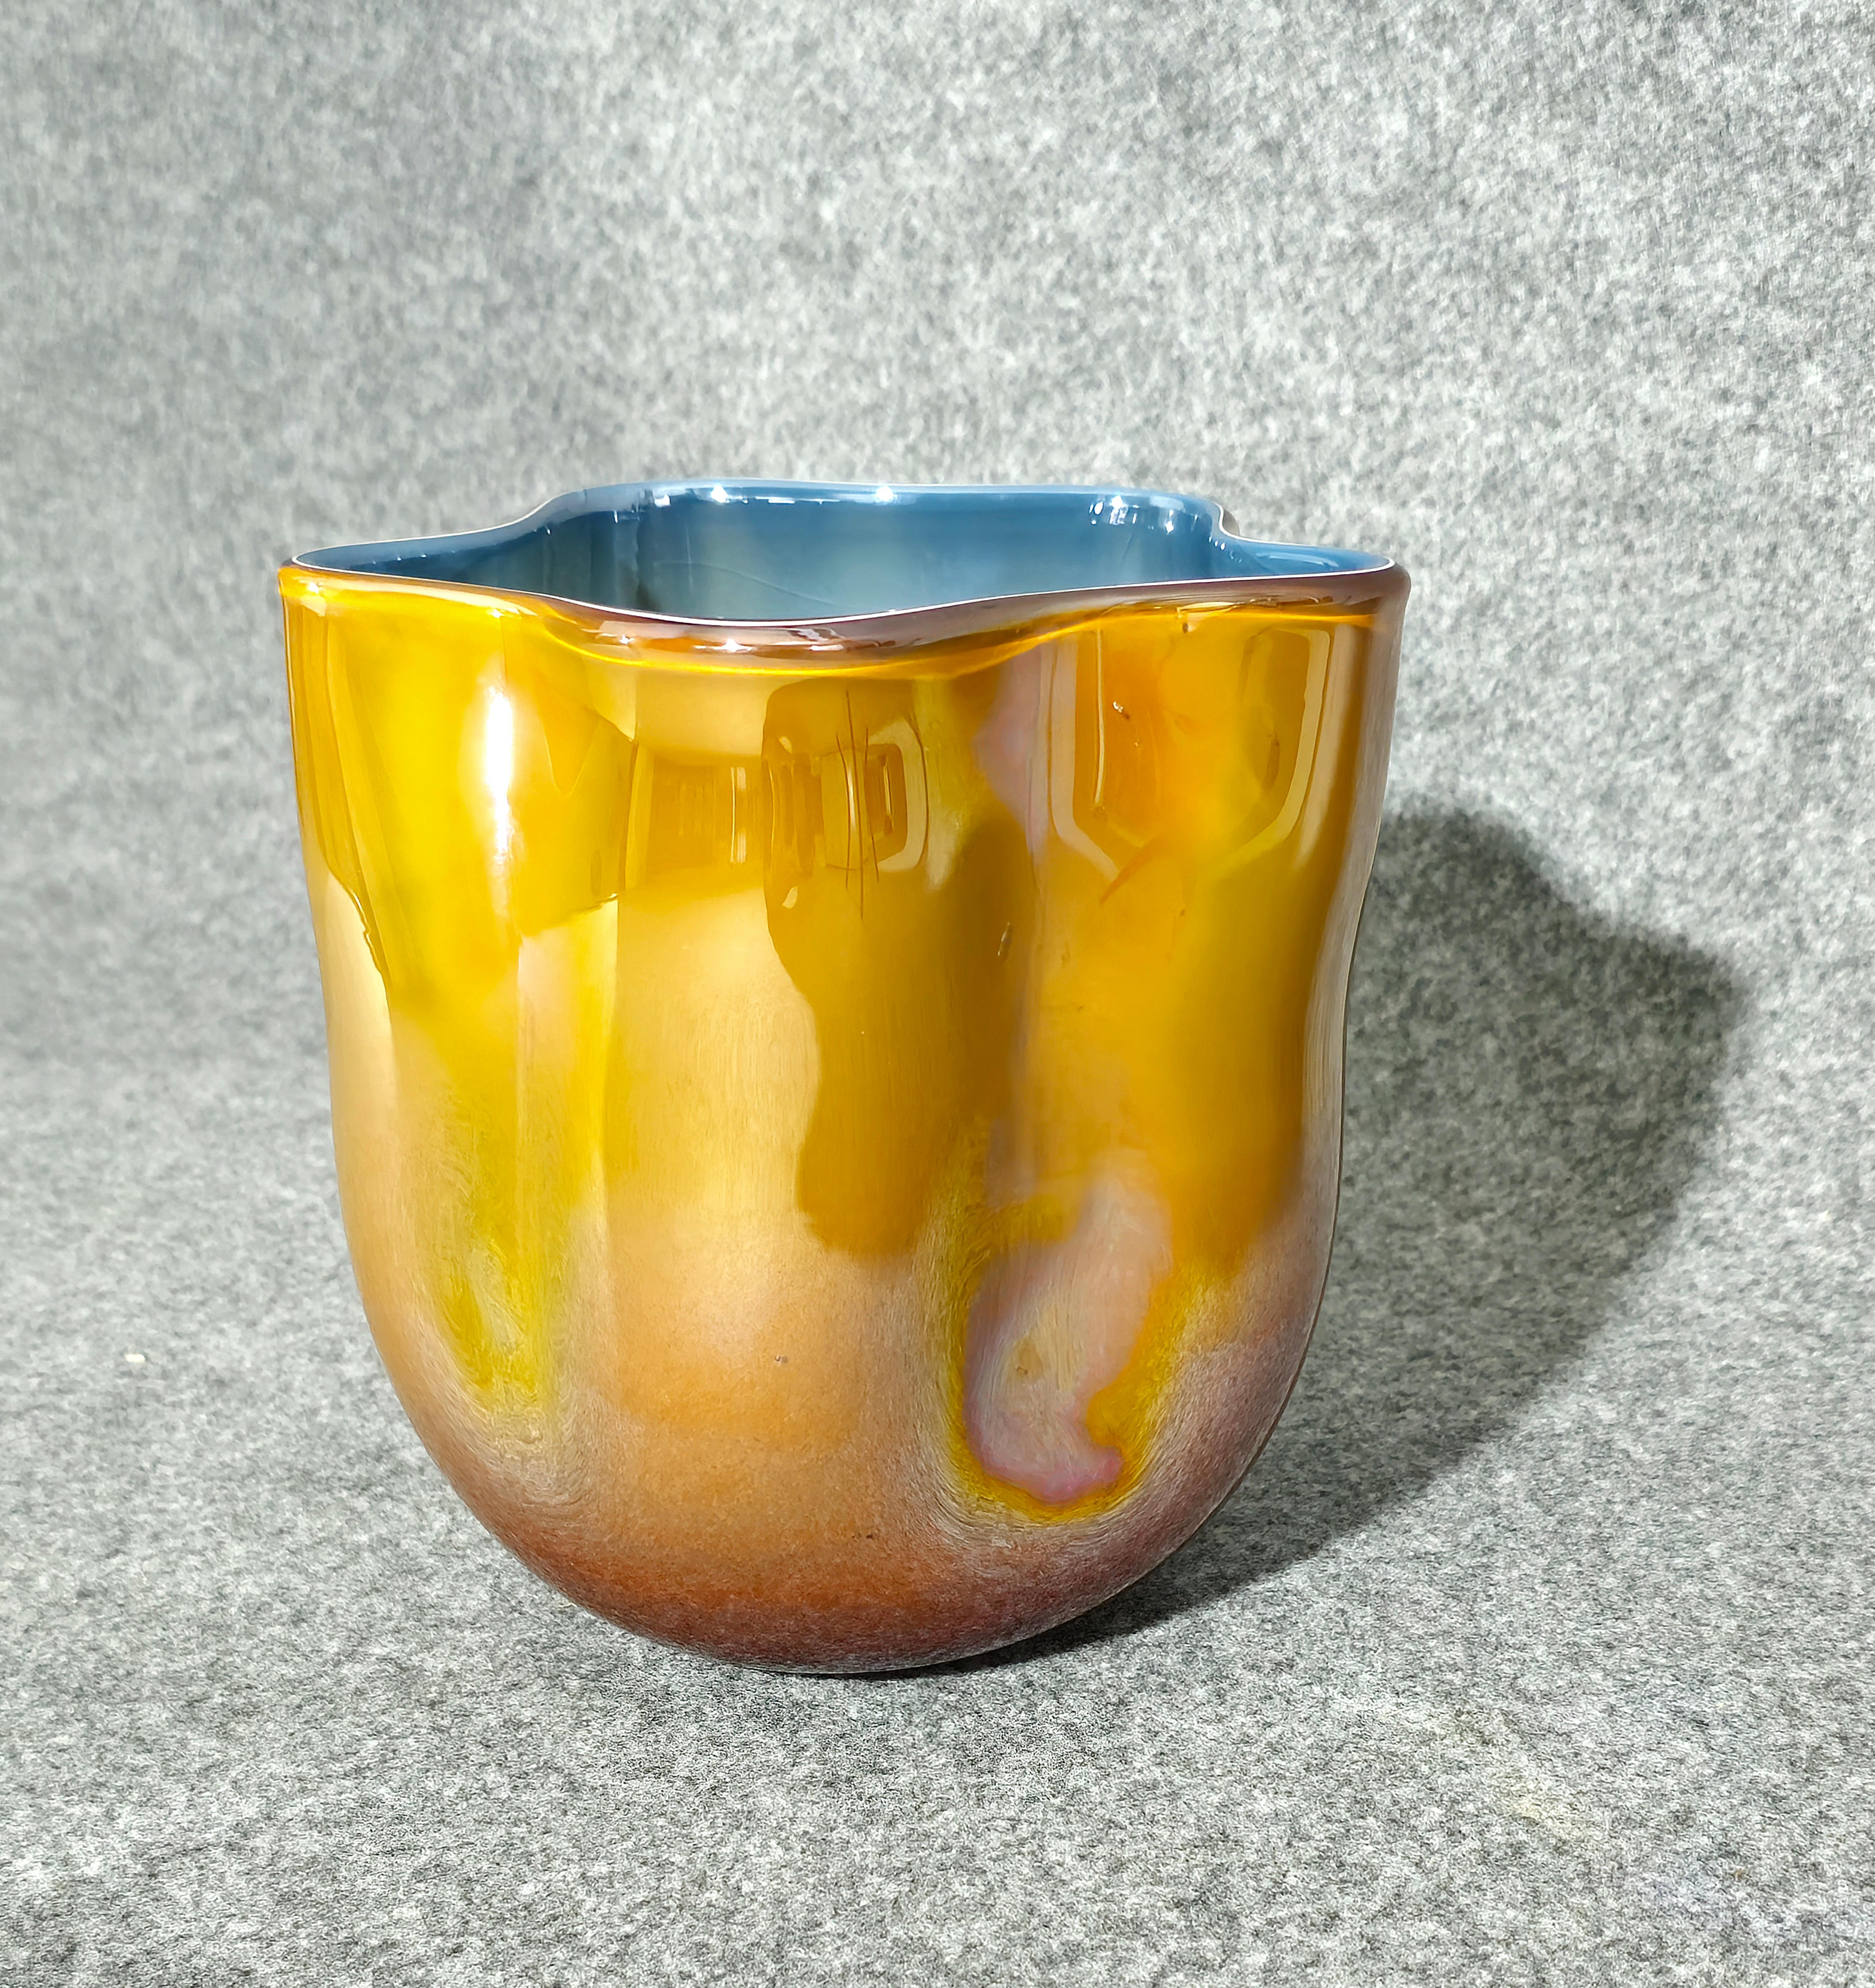 Besondere Vase aus geschichtetem Murano-Glas, bernsteinfarben und blau mit Glanzeffekt. Zylindrischer Körper mit gewellten Wänden, flache gewellte Öffnung, hergestellt in Italien in den 70er Jahren. Leider geben einige Spiegelungen ihm nicht seine